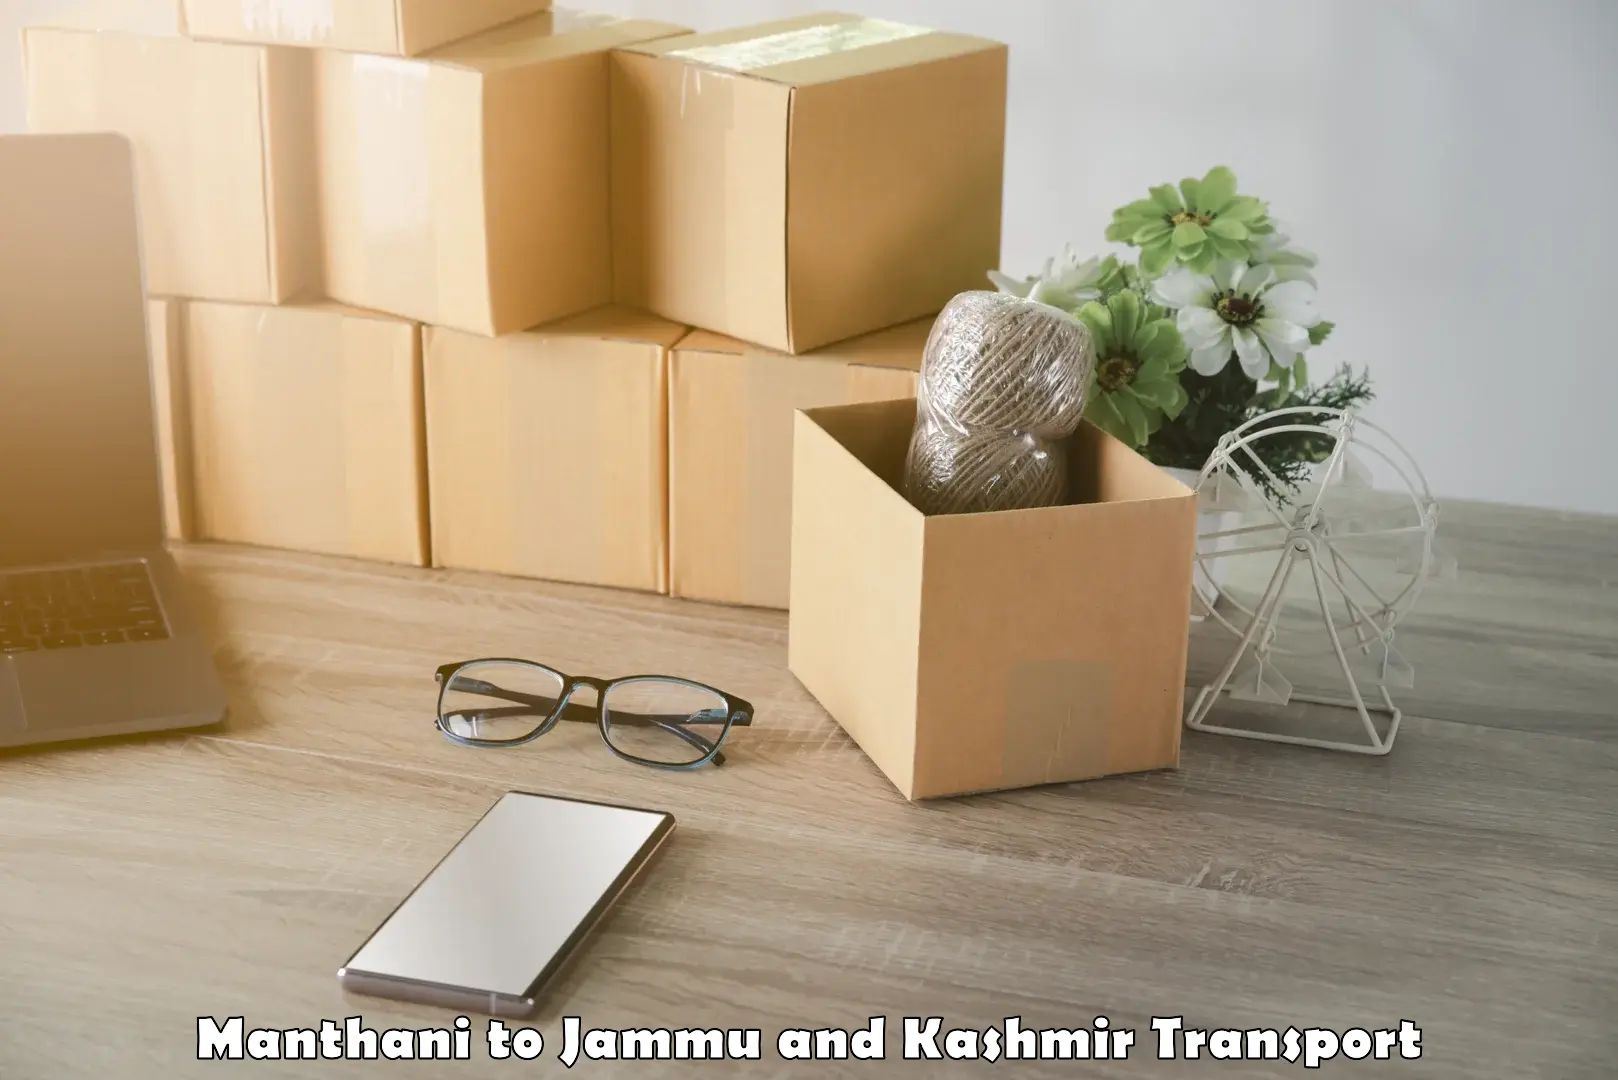 Daily transport service Manthani to IIT Jammu